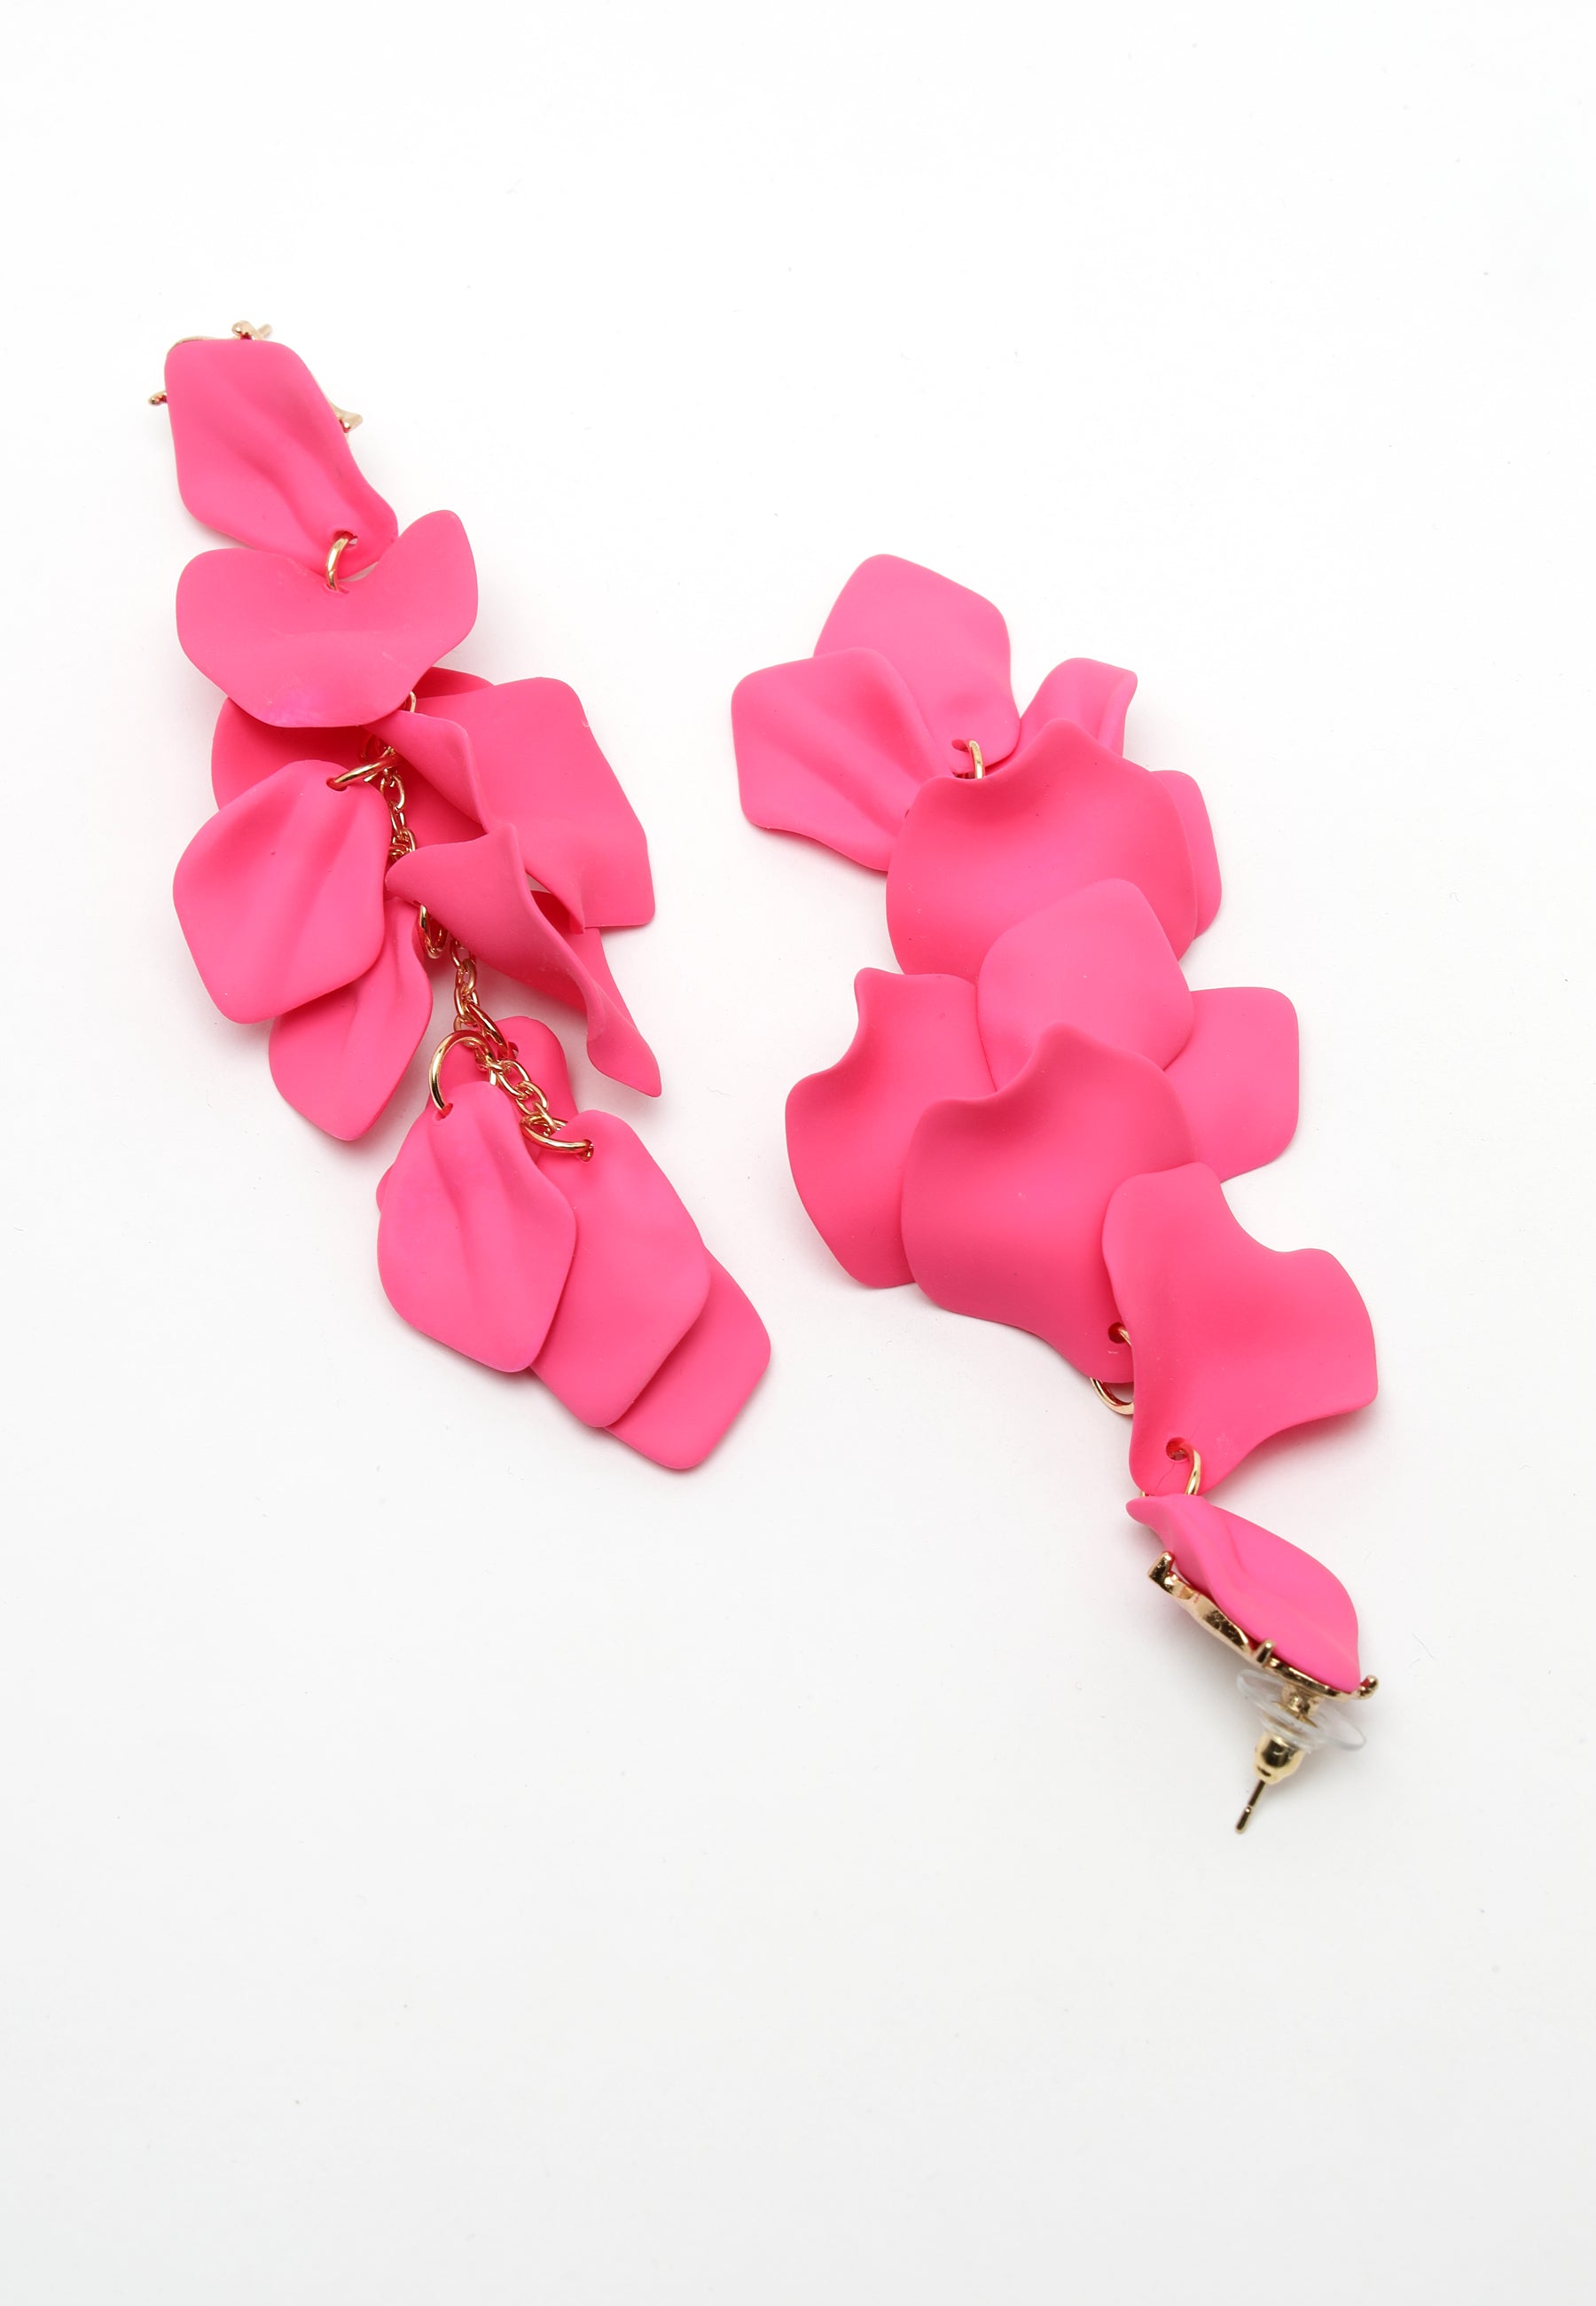 Ohrhänger in Form eines rosafarbenen Rosenblütenblatts.